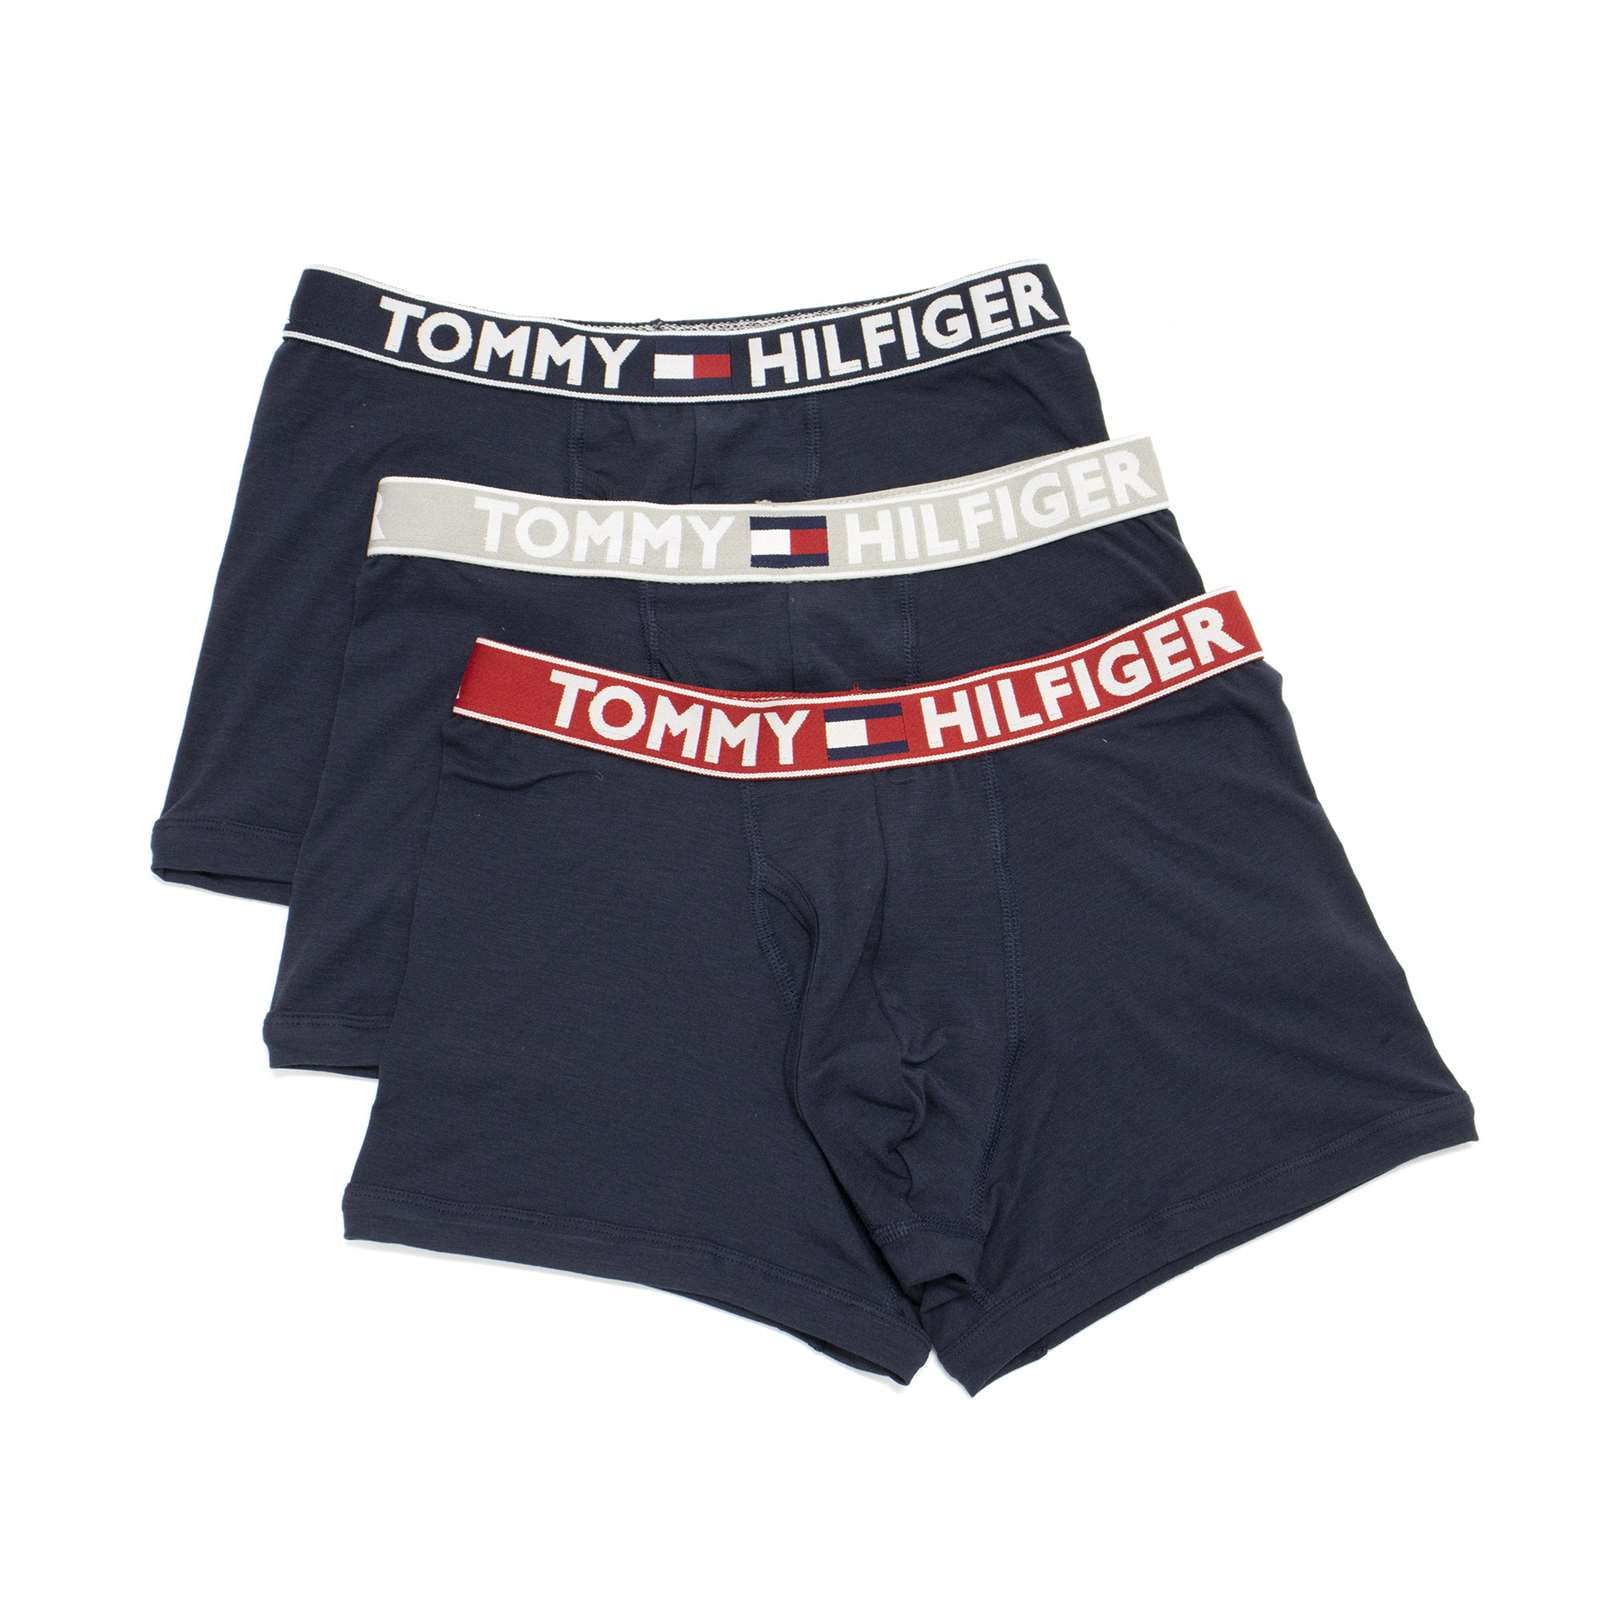 Tommy Hilfiger Men's Comfort 2.0 3 Pack Trunks, Dark Navy,M - US